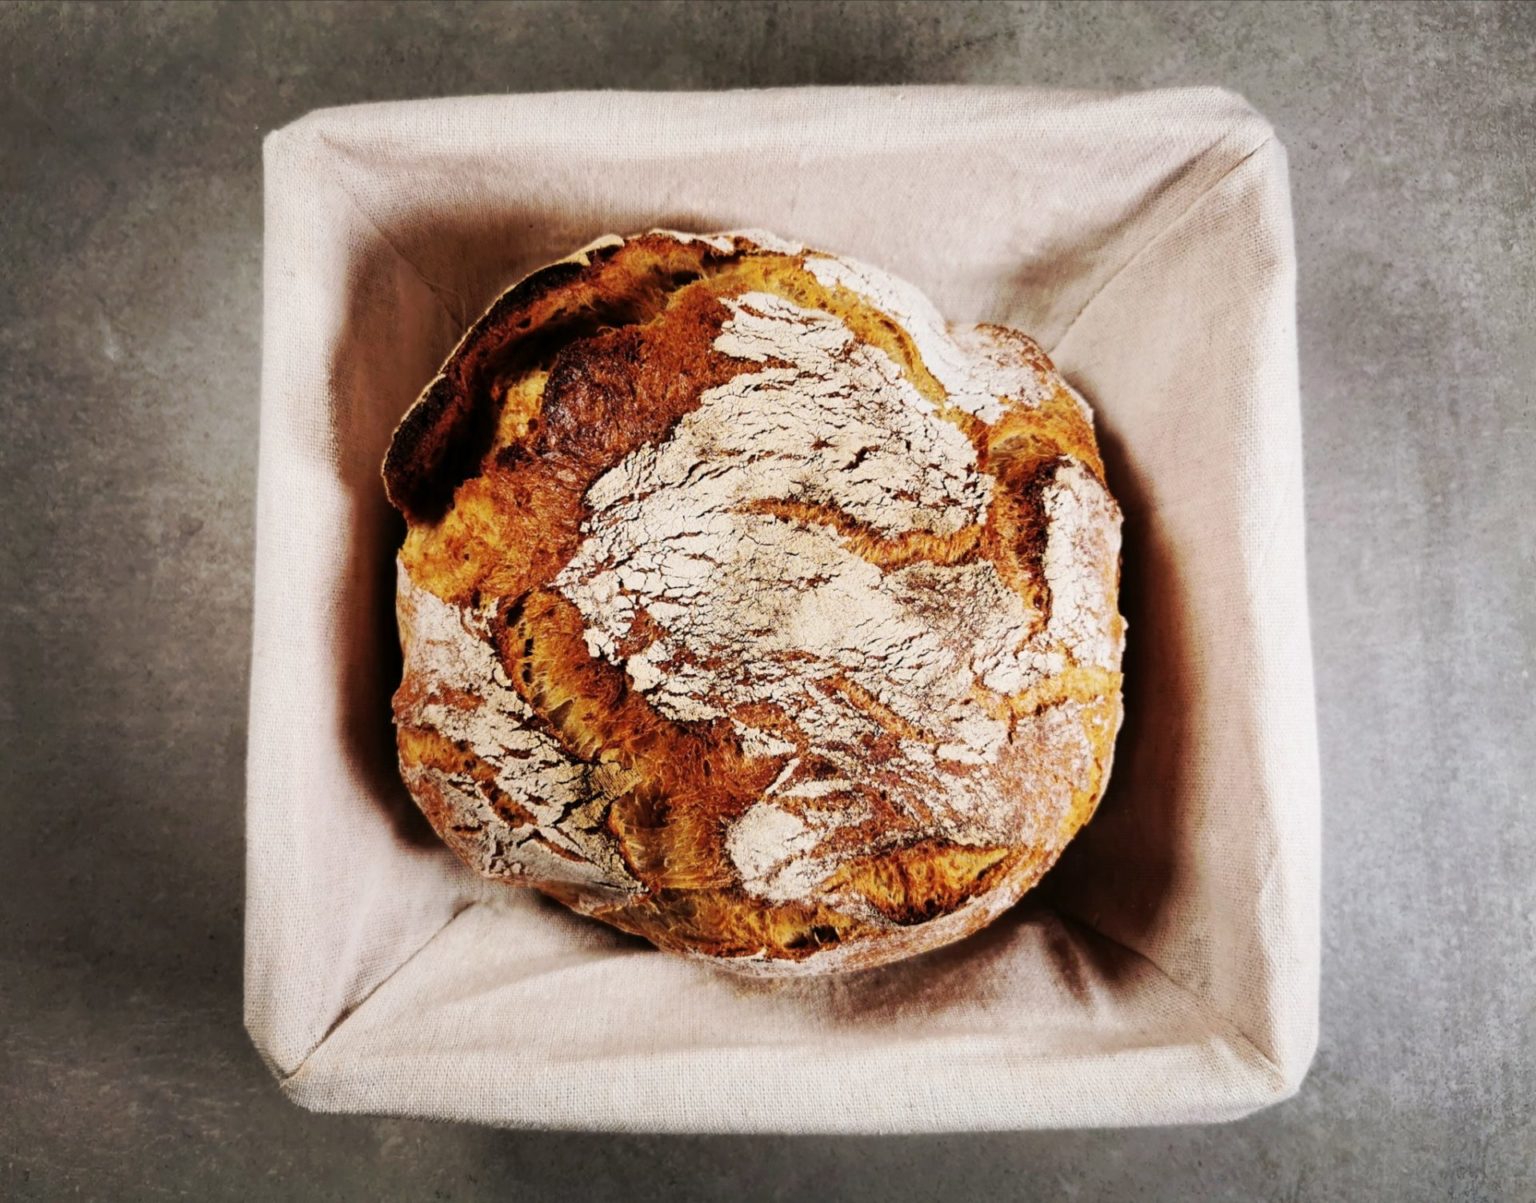 &amp;quot;Brot an einem Tag gebacken&amp;quot;-Brot - www.brooot.de